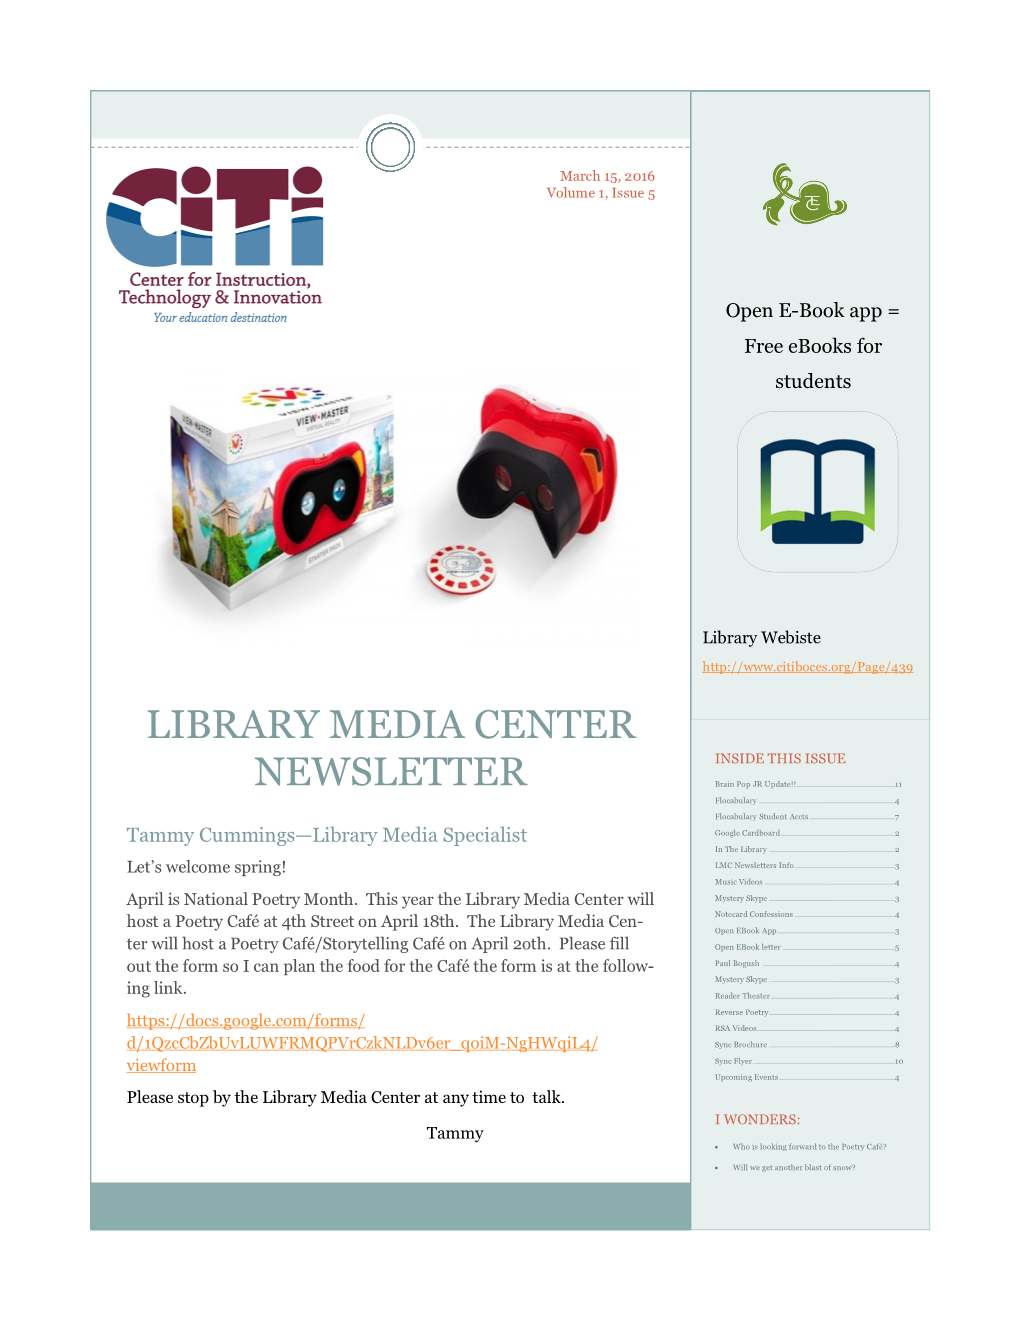 Library Media Center Newsletter